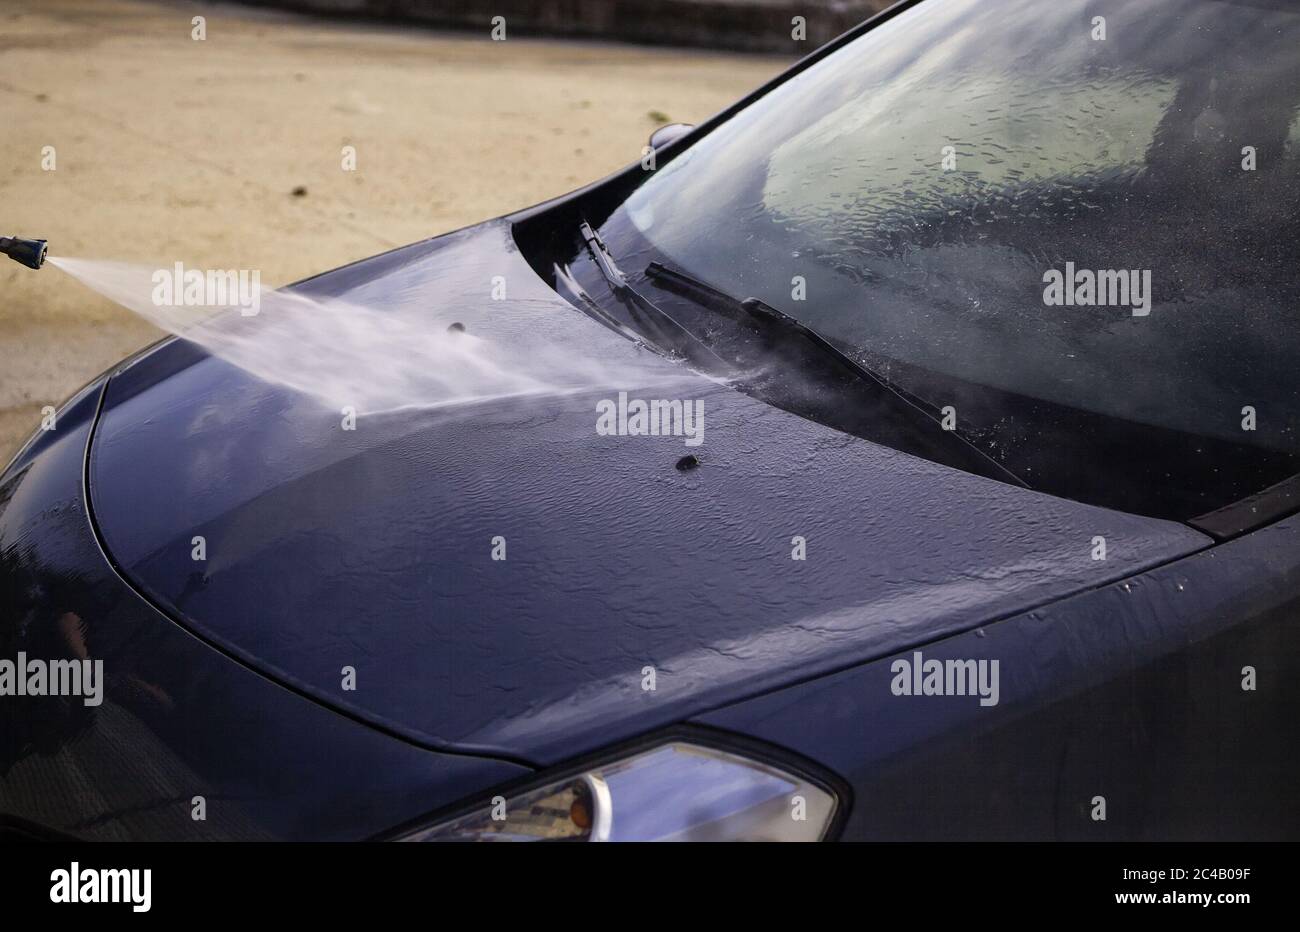 Lavaggio di un'auto con acqua pressurizzata, dettaglio di pulizia e cura, manutenzione Foto Stock